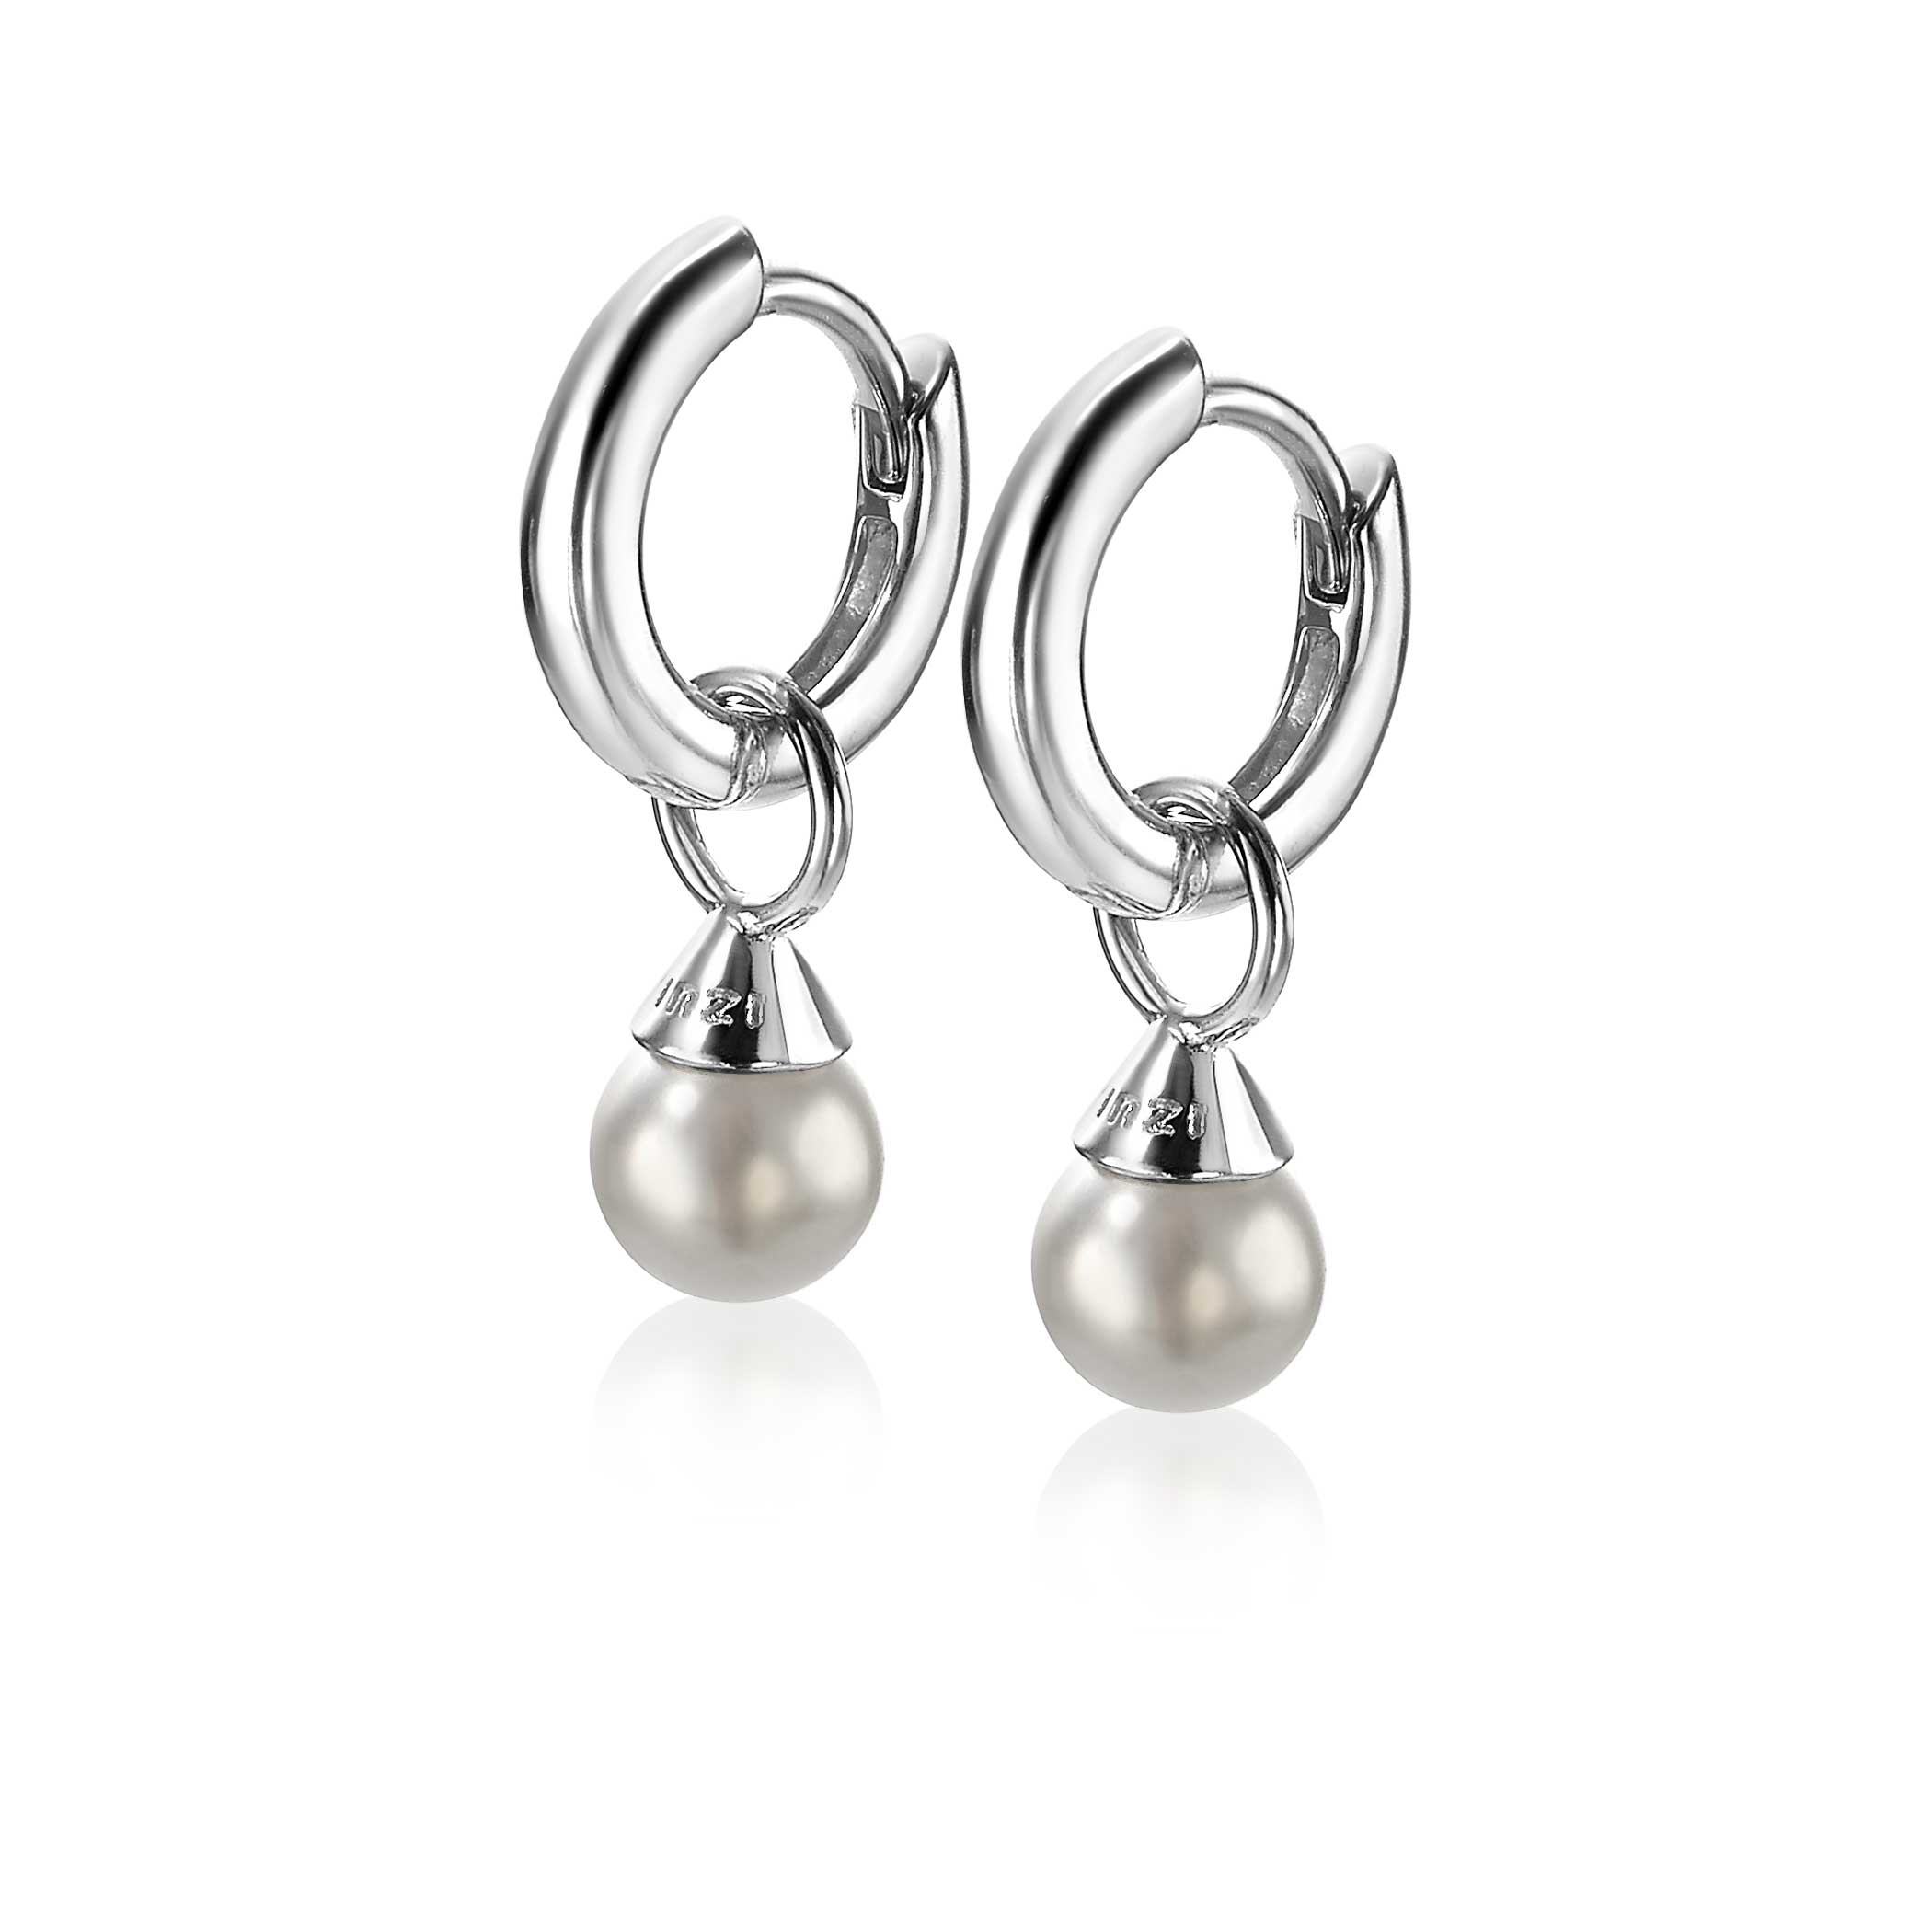 ZINZI Sterling Silver Earrings Pendants Pearls Light Grey ZICH1749LG (excl. hoop earrings)